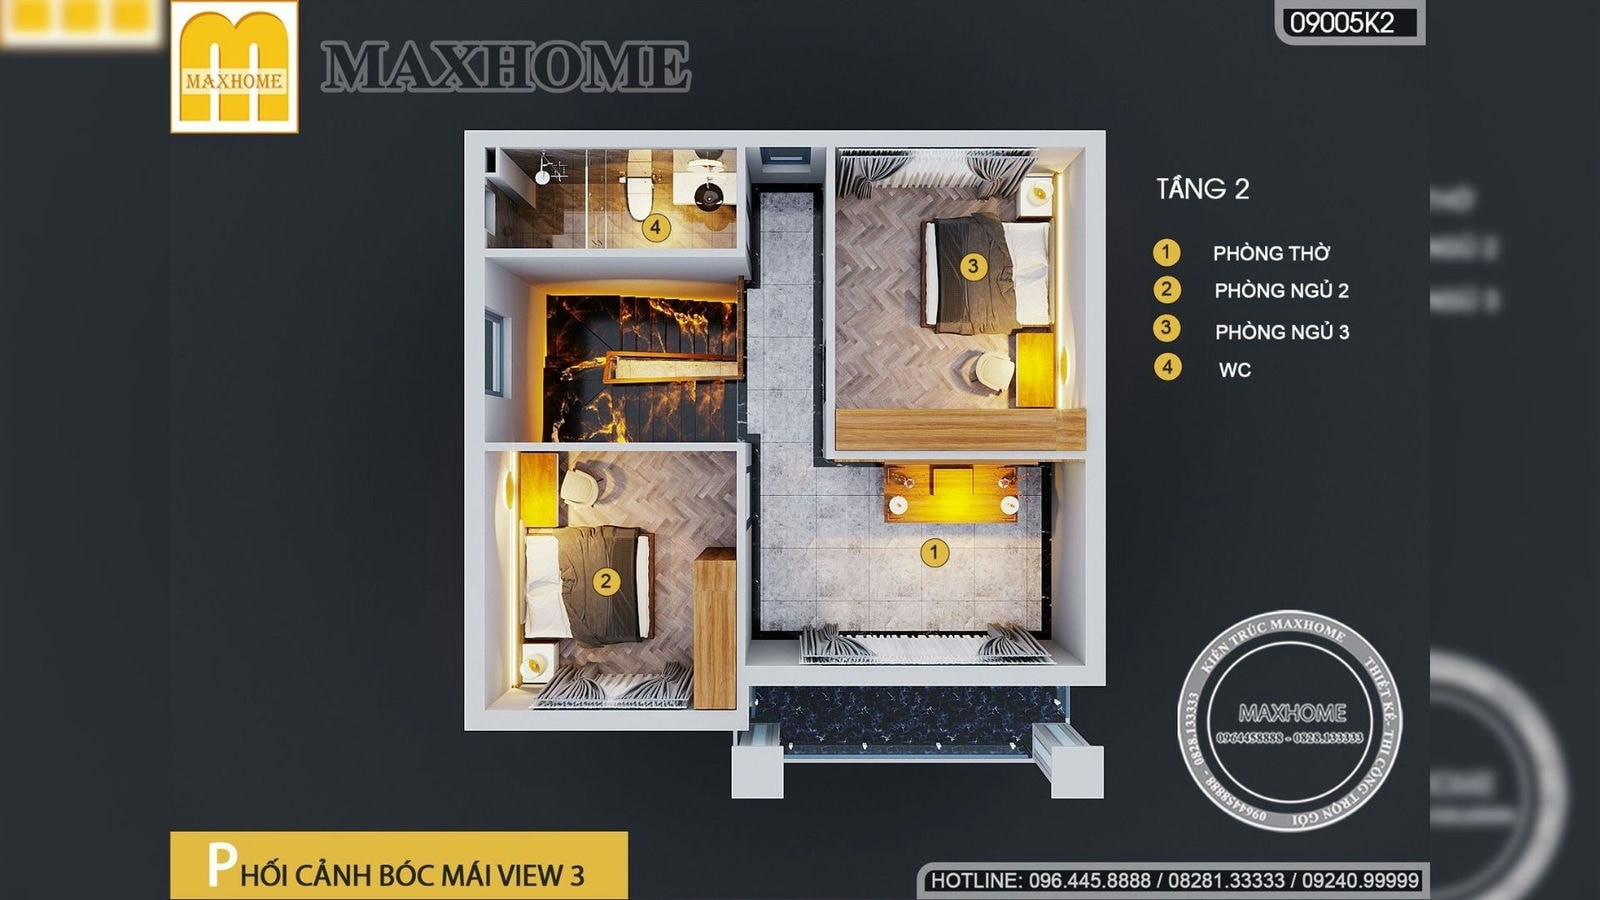 Nhà 2 tầng 3 phòng ngủ nhỏ xinh với chi phí chỉ từ 1,3 tỷ đồng | MH02051